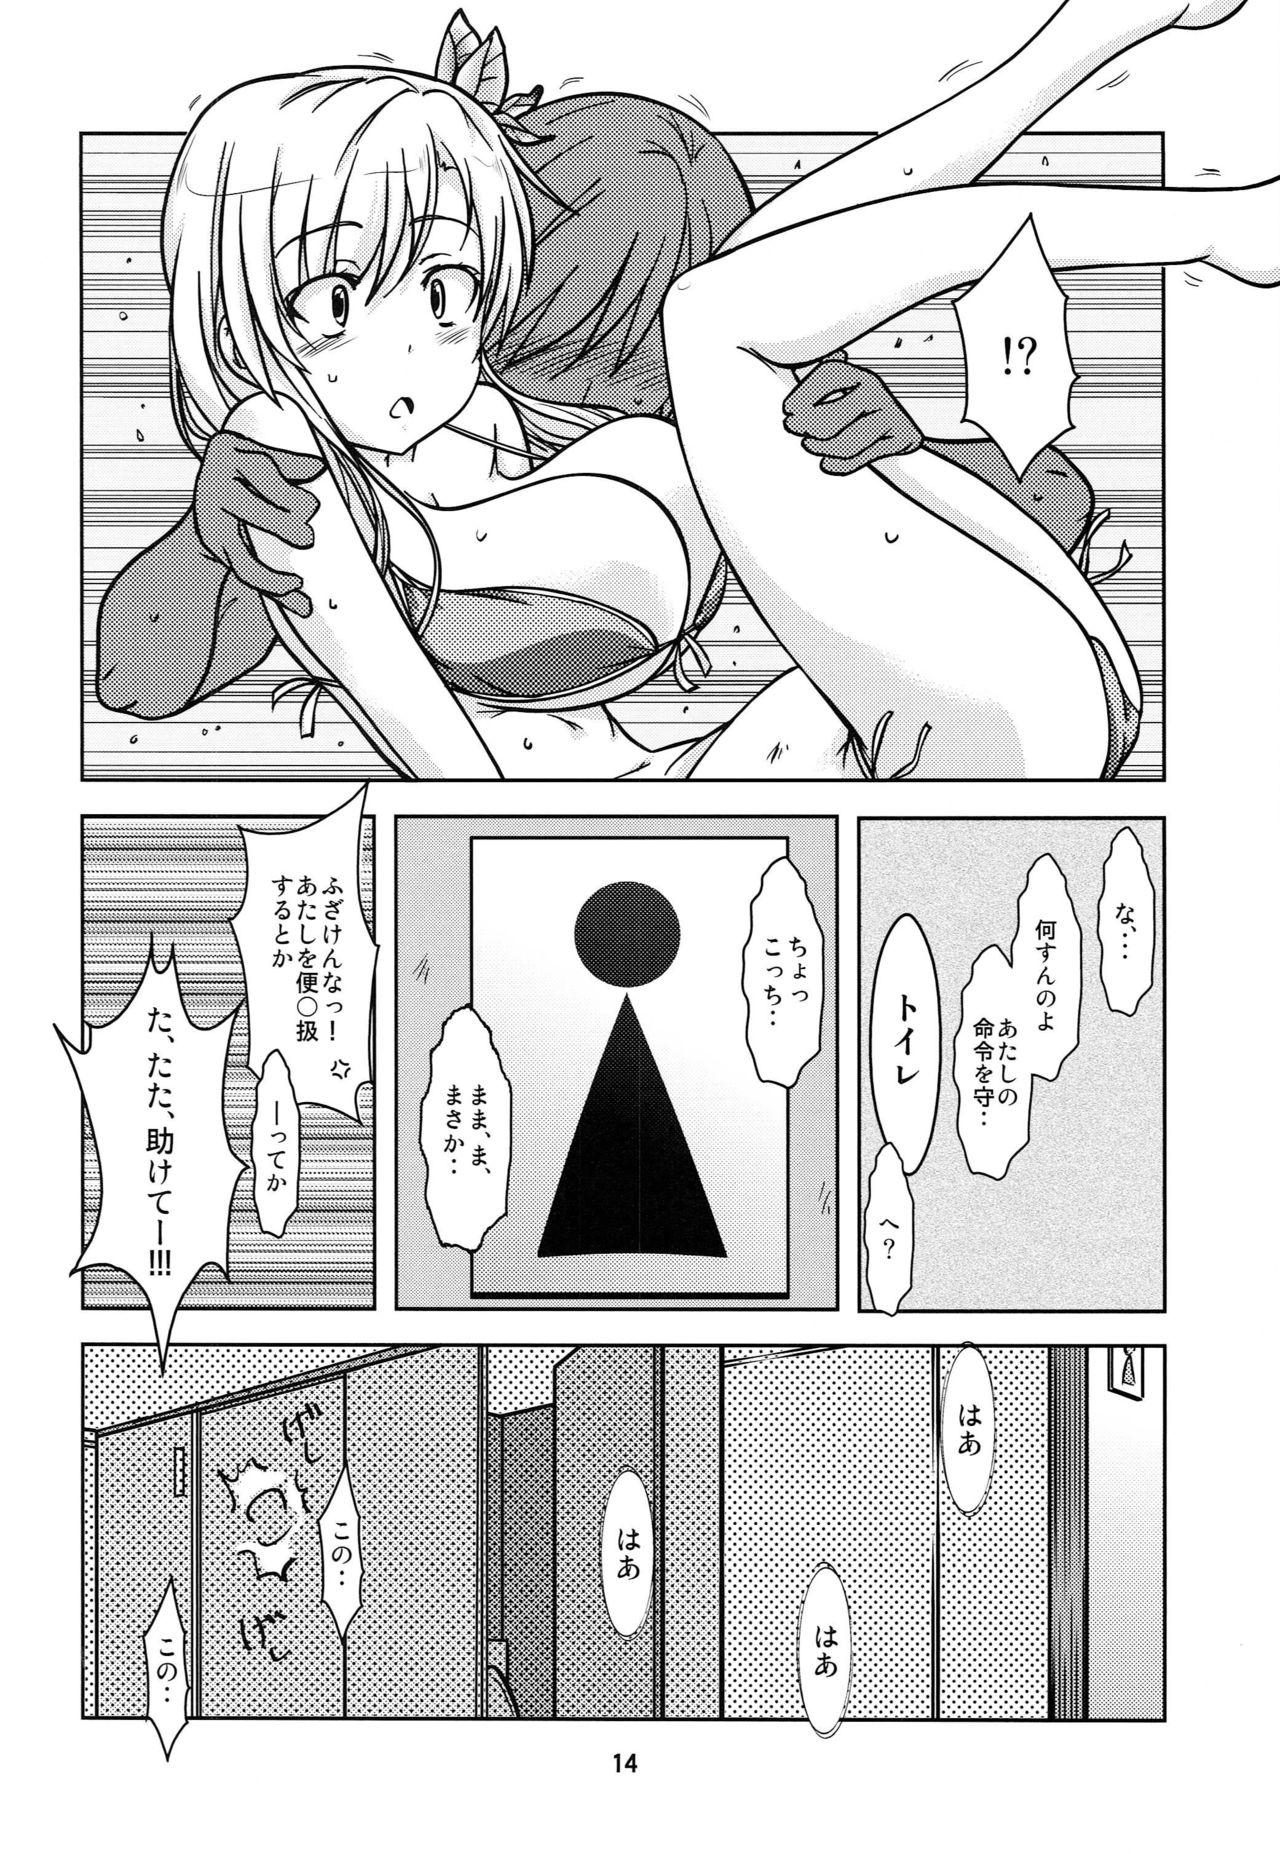 Adorable NIKUPon - Boku wa tomodachi ga sukunai Game - Page 13